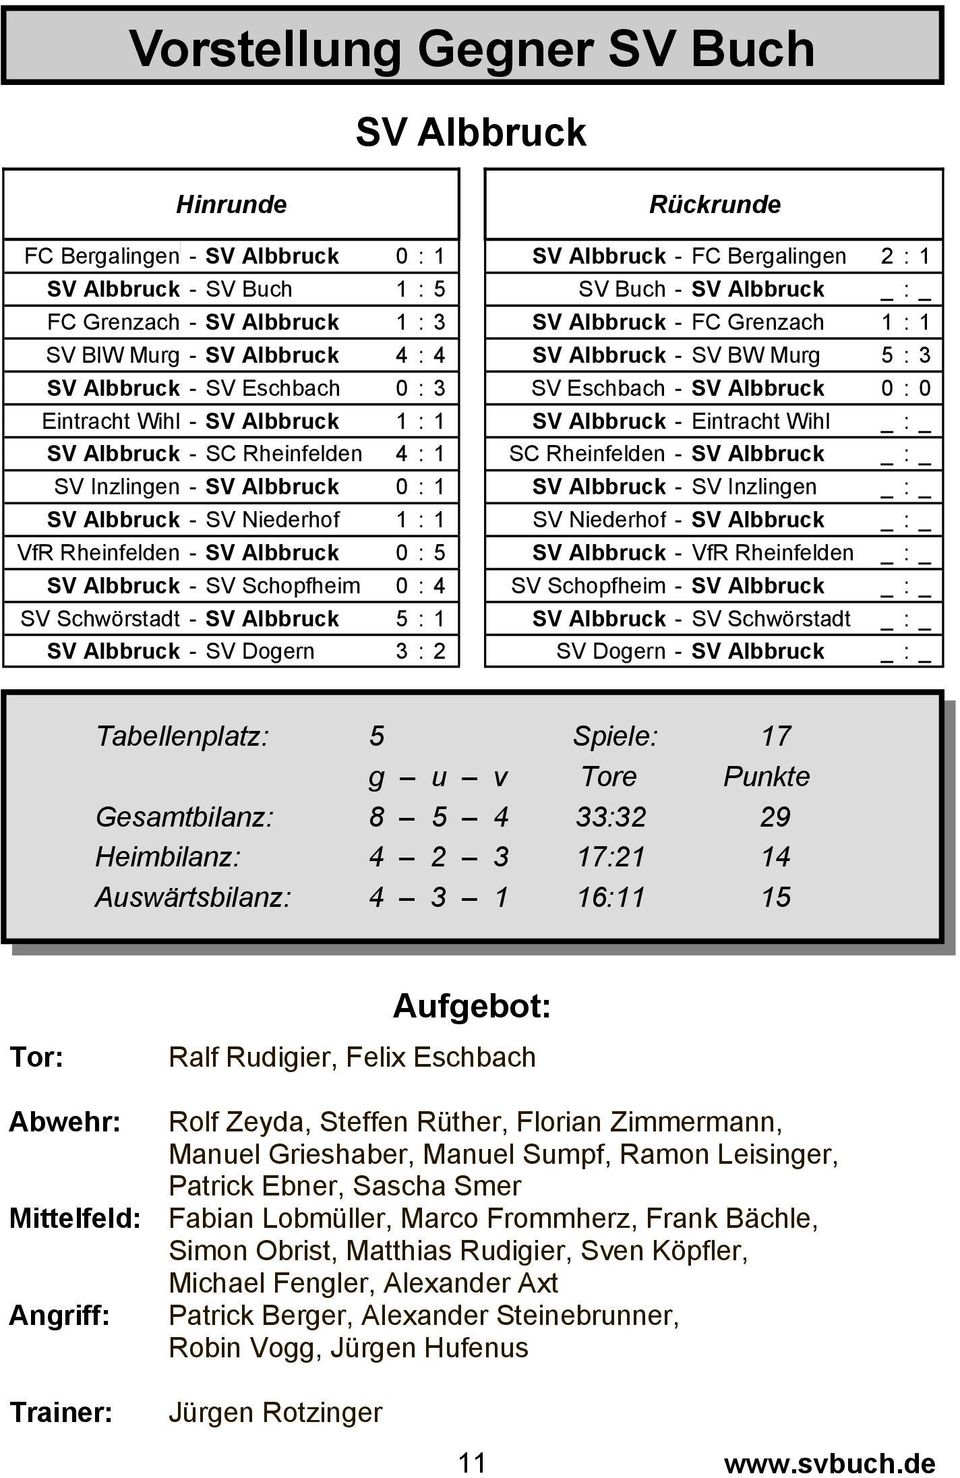 0 : 0 Eintracht Wihl - SV Albbruck 1 : 1 SV Albbruck - Eintracht Wihl _ : _ SV Albbruck - SC Rheinfelden 4 : 1 SC Rheinfelden - SV Albbruck _ : _ SV Inzlingen - SV Albbruck 0 : 1 SV Albbruck - SV